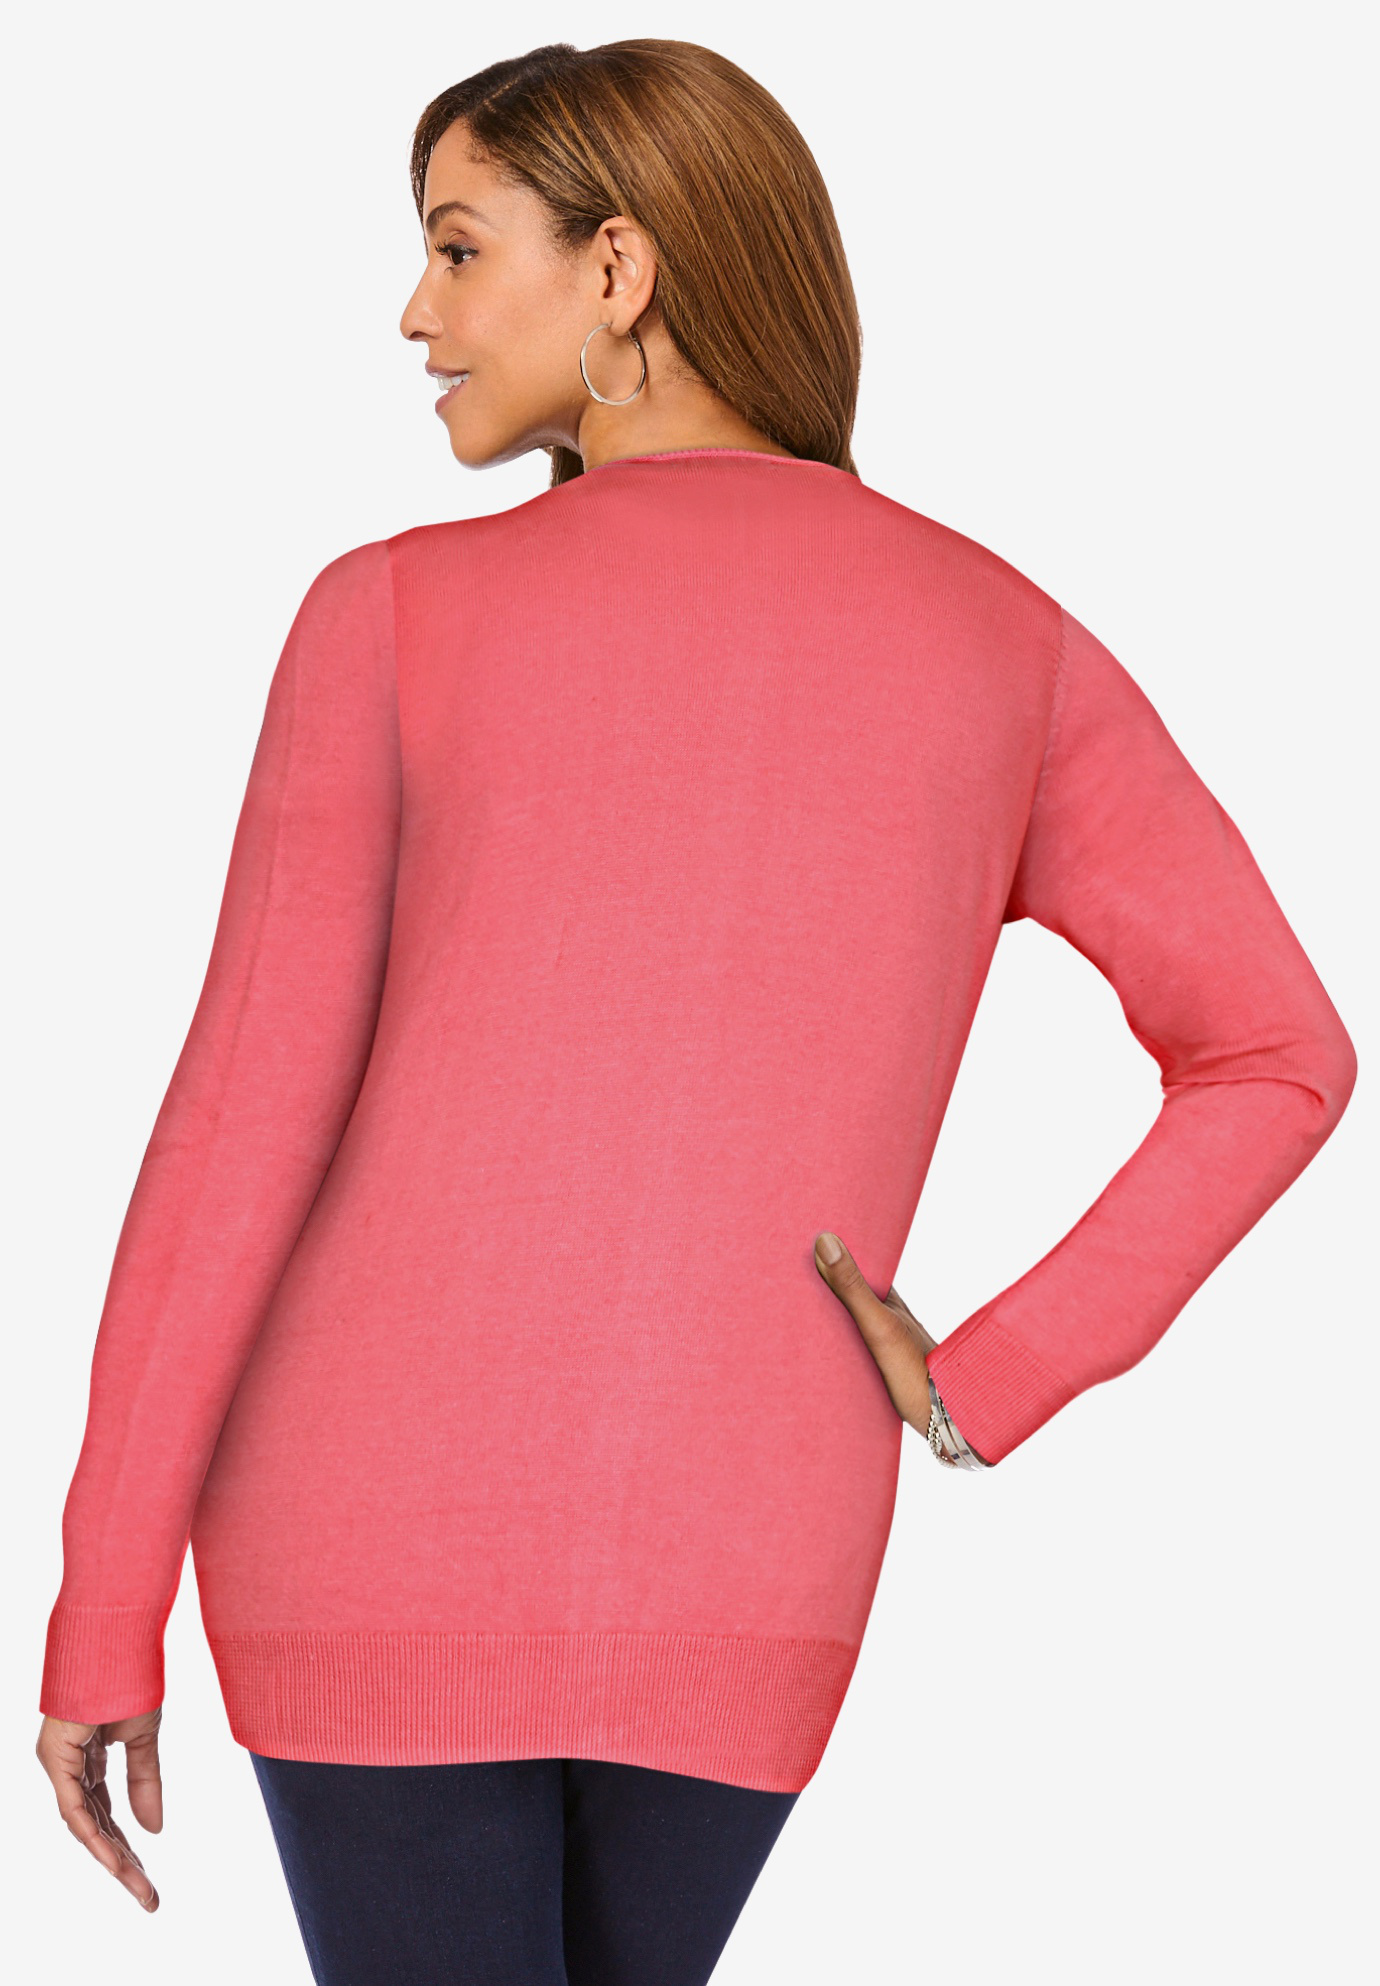 Jessica London Women's Plus Size Fine Gauge Cardigan Sweater - image 5 of 6